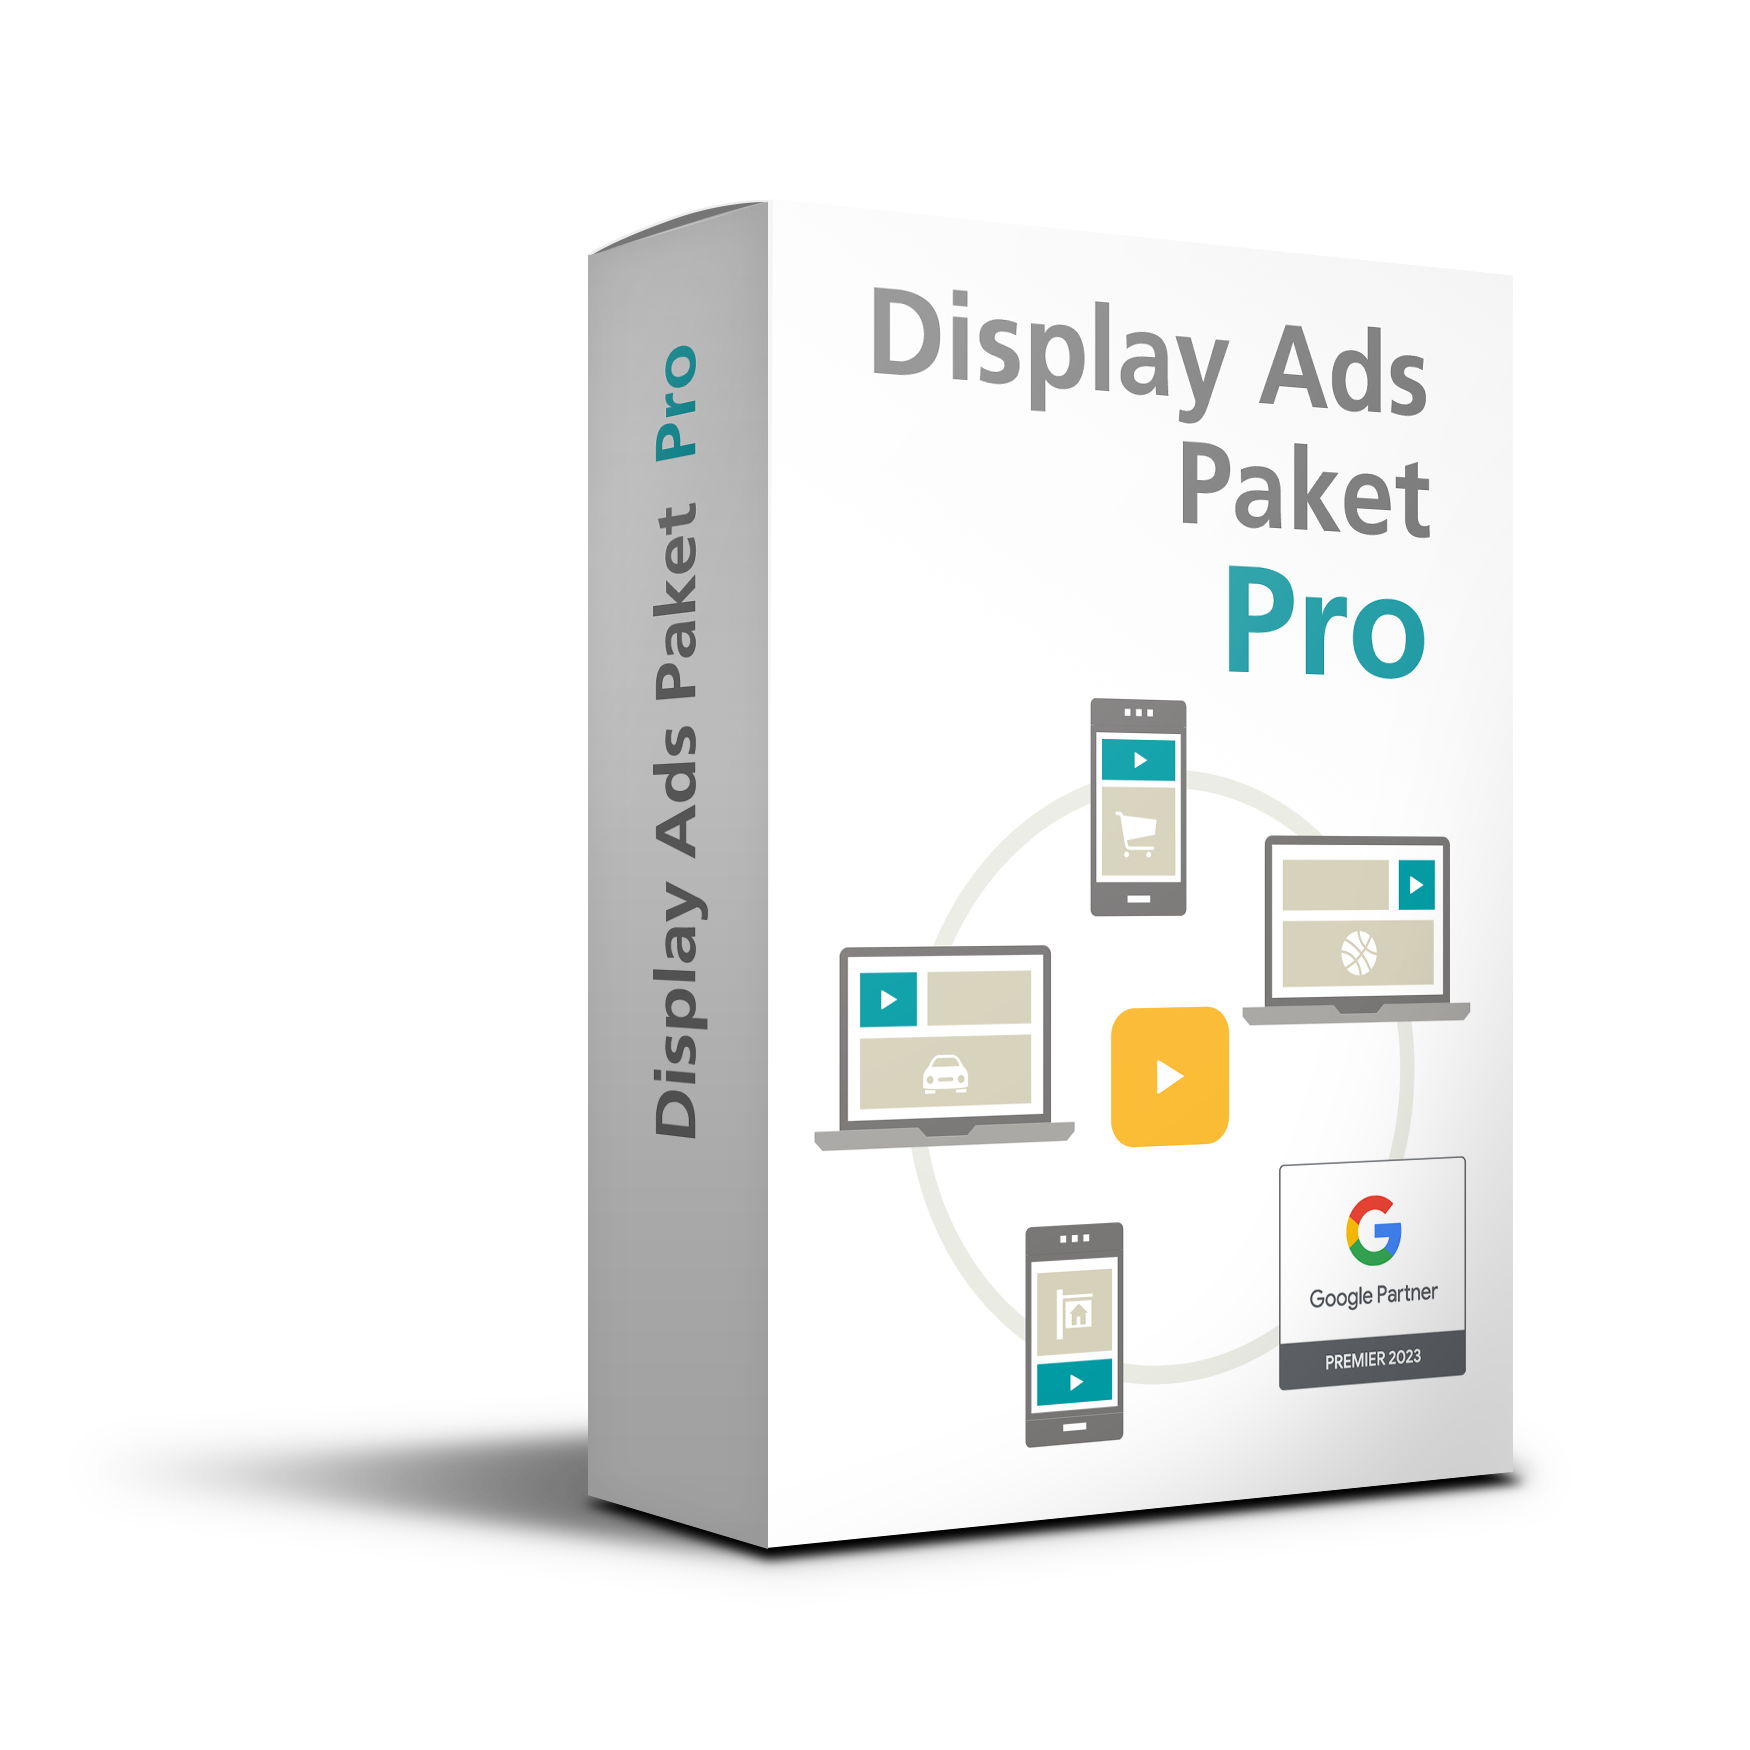 Google Display Ads Paket Pro